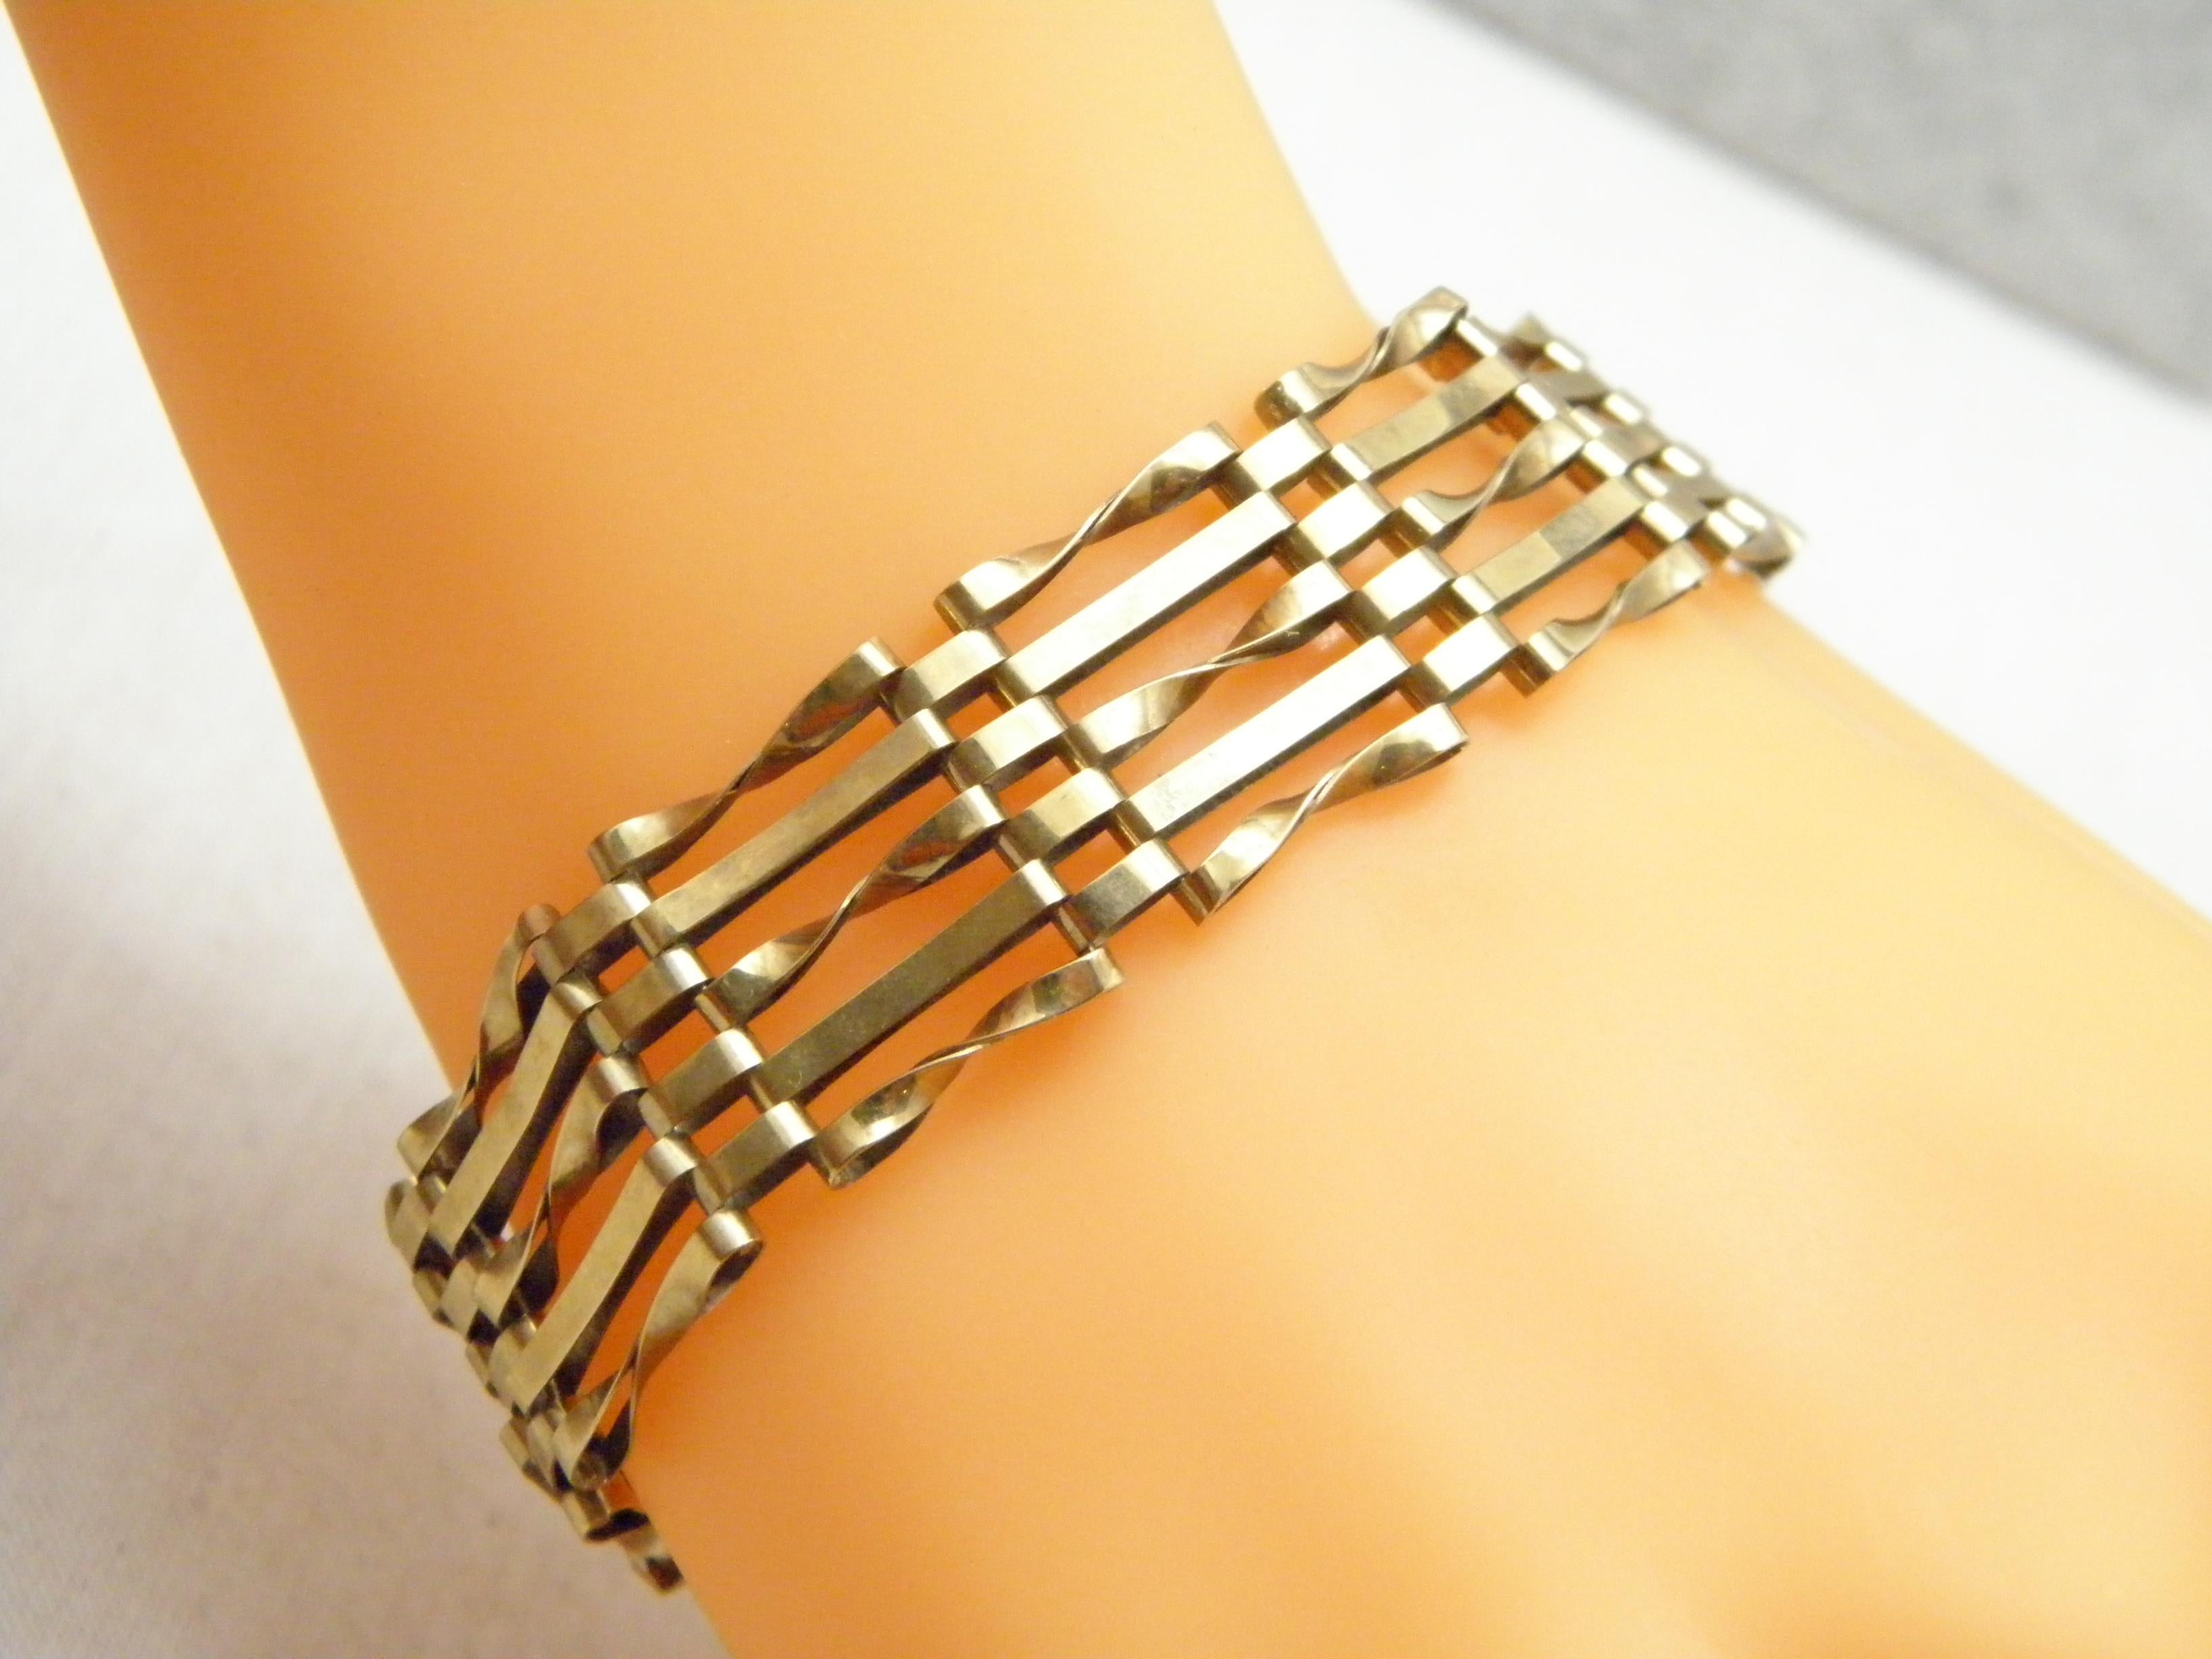 asj 375 gold bracelet price